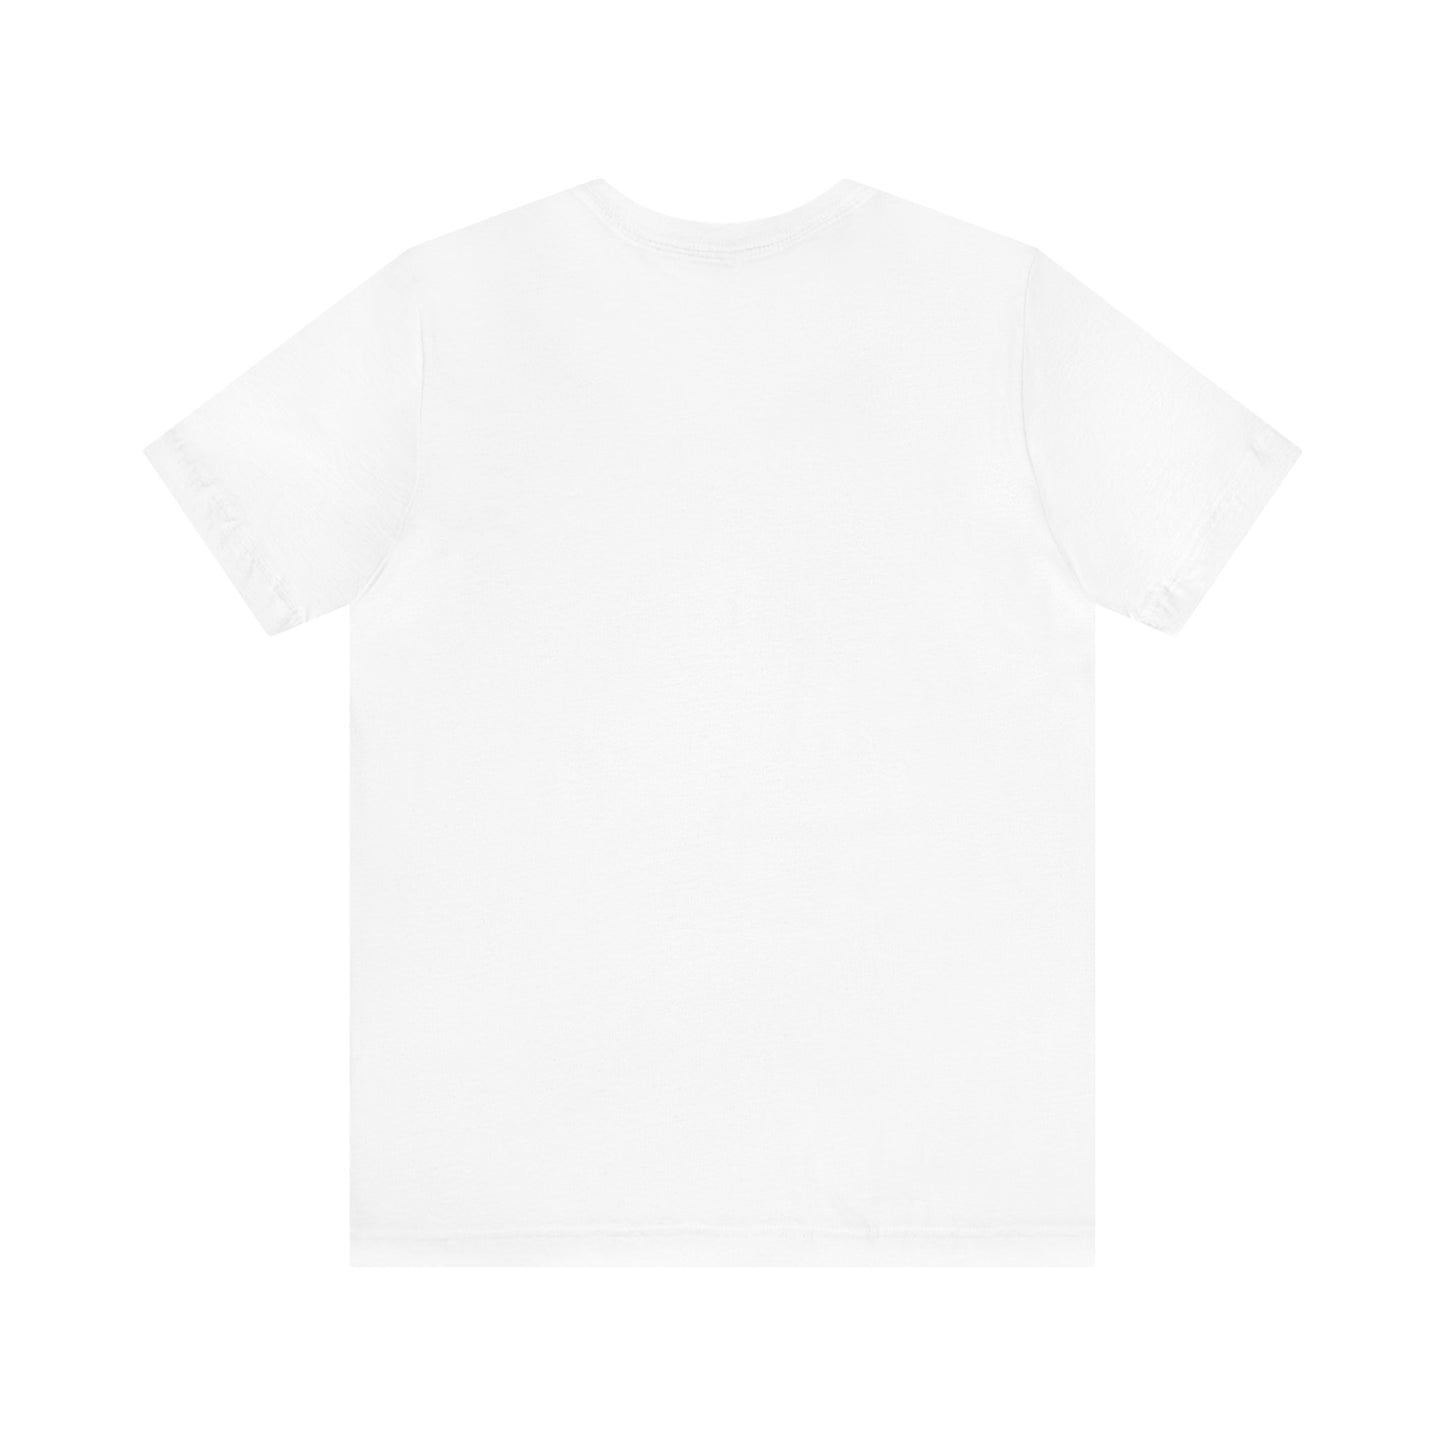 Summer Alexa by Weakart - Epic Seven T-Shirt (Unisex)